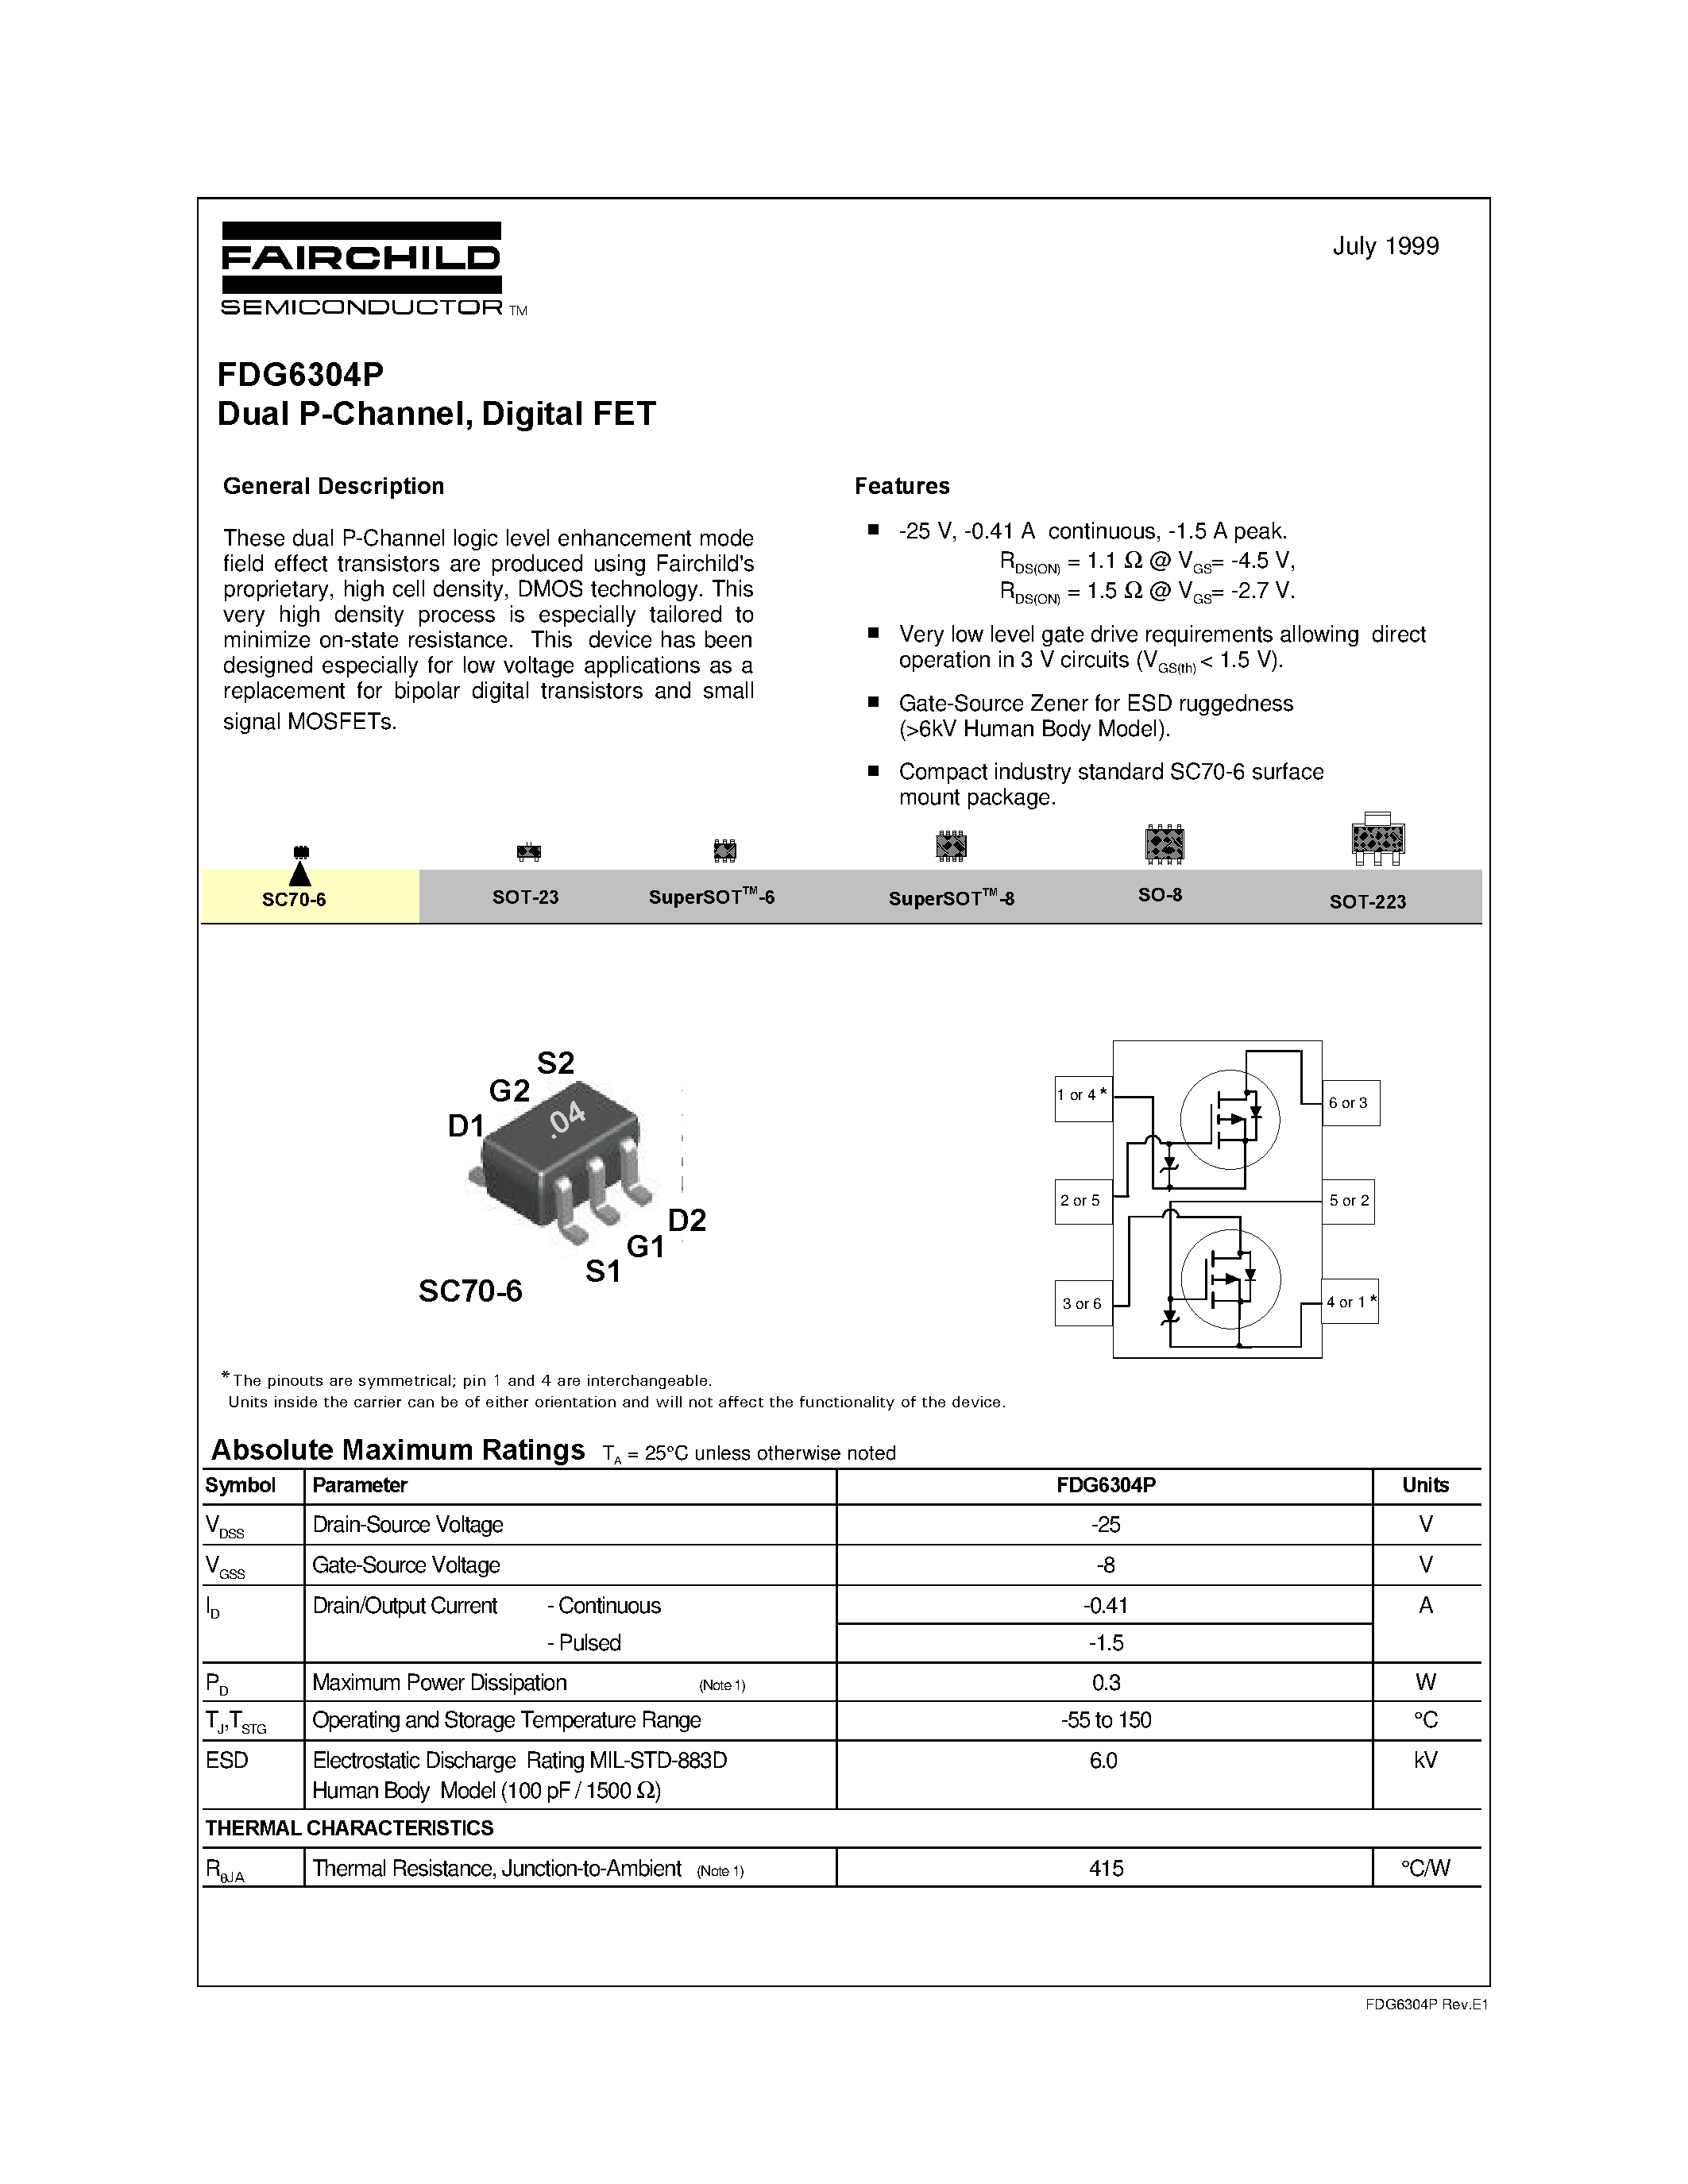 Datasheet FDG6304P - Dual P-Channel/ Digital FET page 1